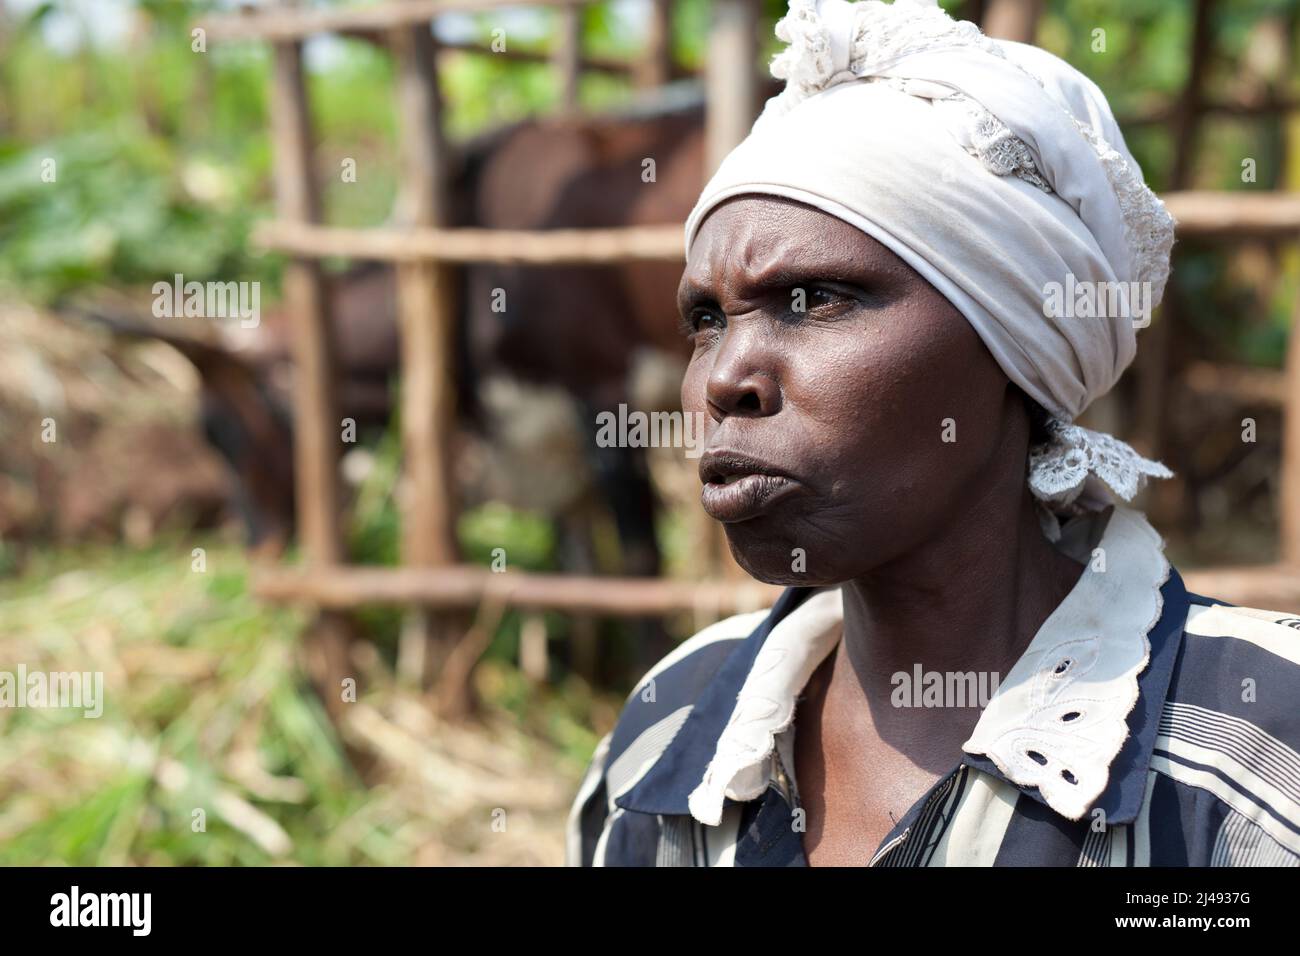 Epiphanie Mukamusoni, de 60 años, viuda con dos hijas mayores y una nieta, el sector de Mbazi, Huye. Epiphanie obtuvo una vaca del programa ARDI. El estiércol de la vaca le ha ayudado a producir una mejor cosecha. La implicación con el programa también ha traído un contacto más cercano con la gente. Fotografía de Mike Goldwater Foto de stock